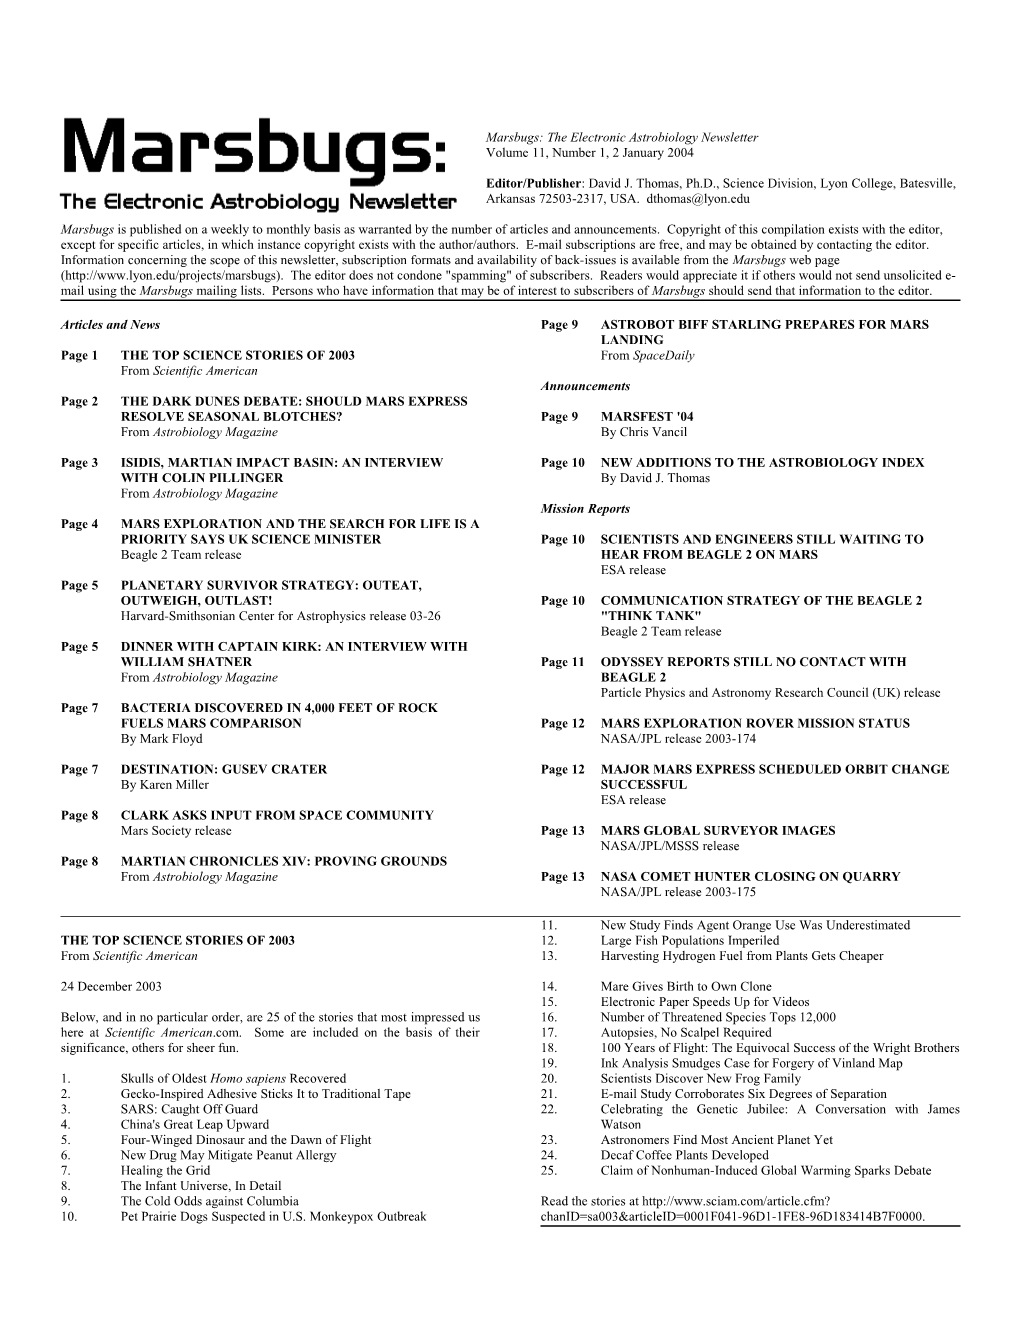 Marsbugs Vol. 11, No. 1